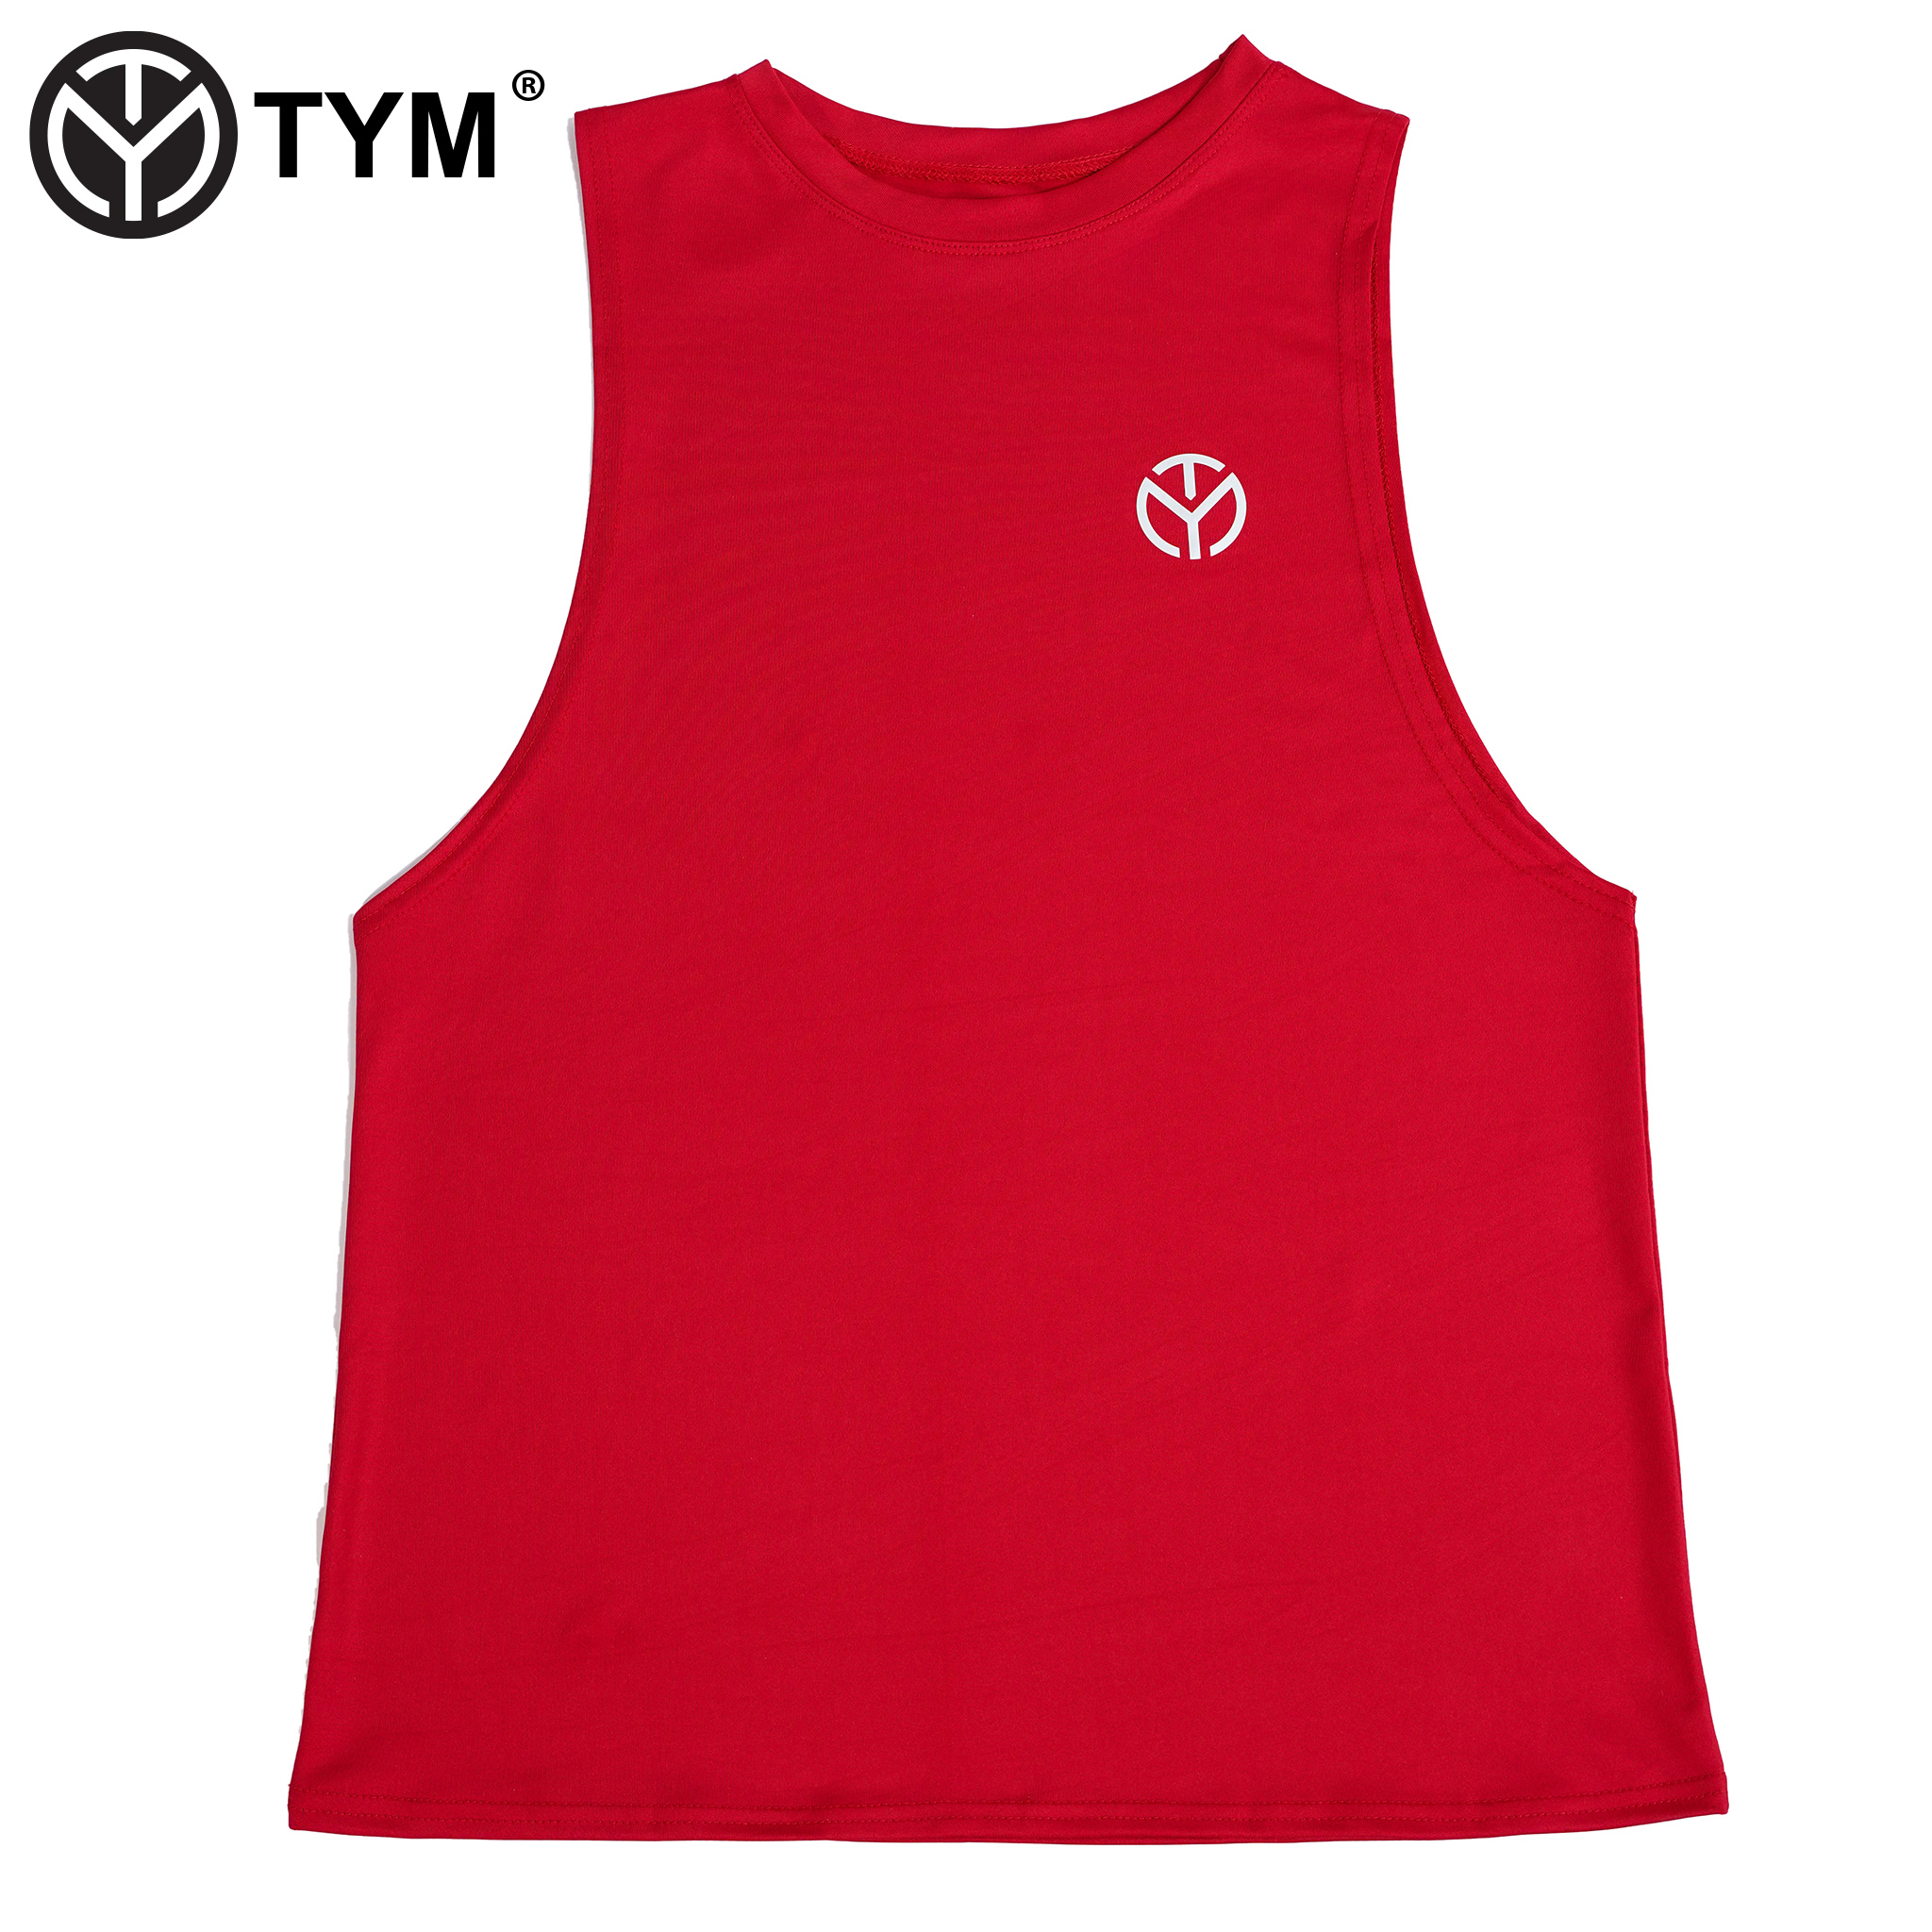 Áo Tank Top thể thao Nữ TYM - Vải mềm mại, thoáng mát - Form rộng - TTWT001 - TYM FASHION